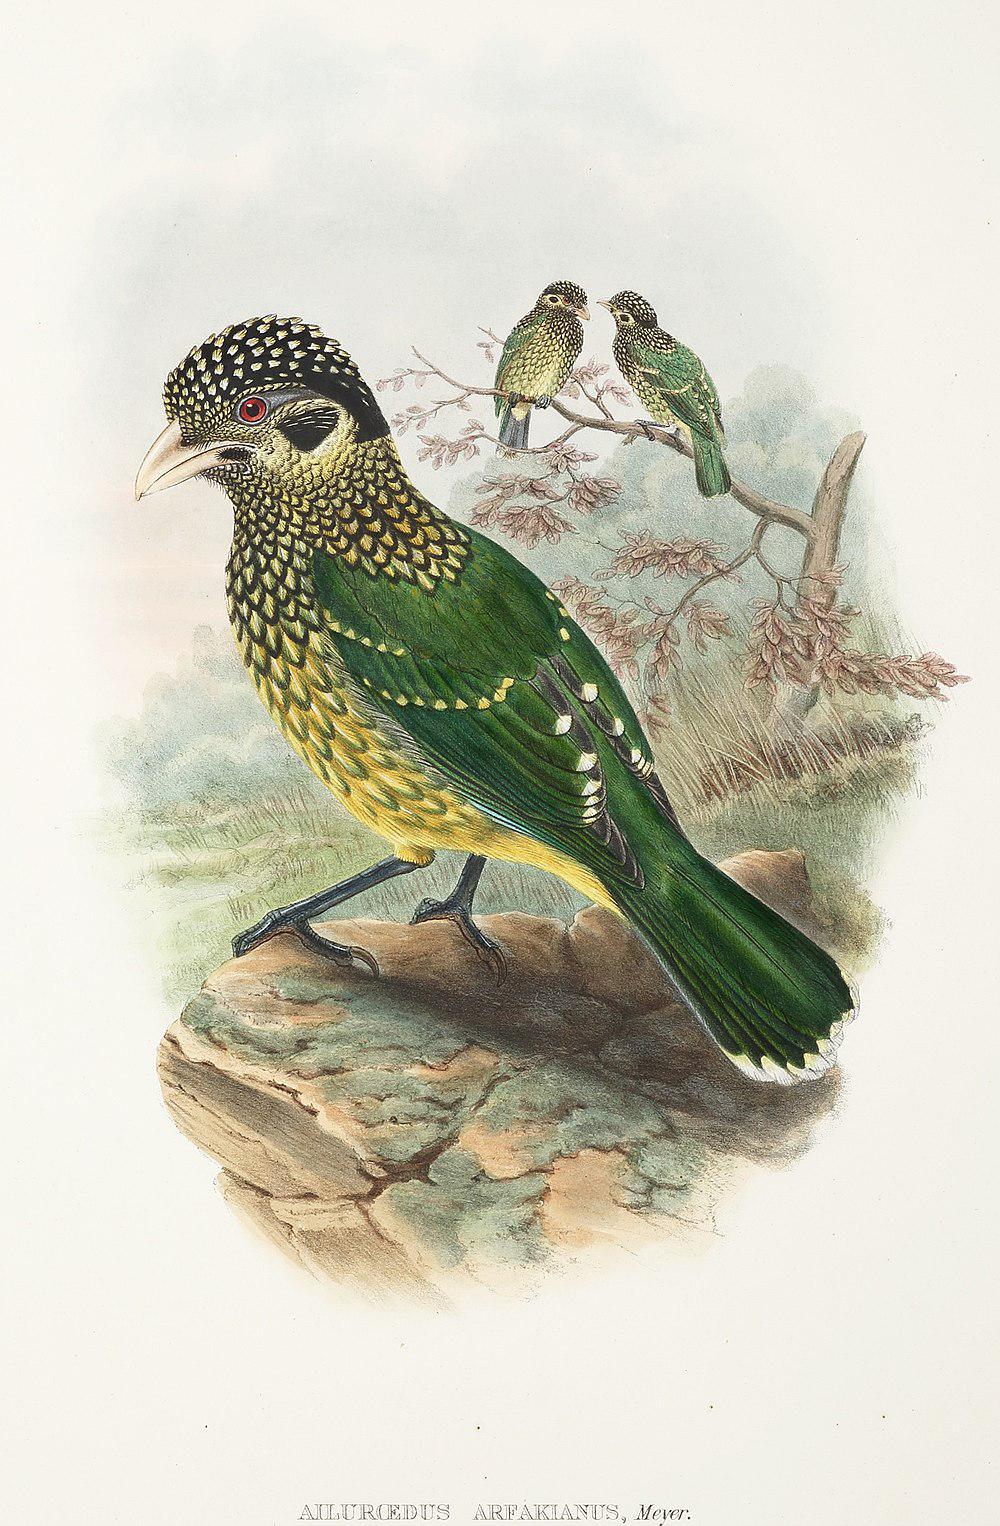 阿法园丁鸟 / Arfak Catbird / Ailuroedus arfakianus